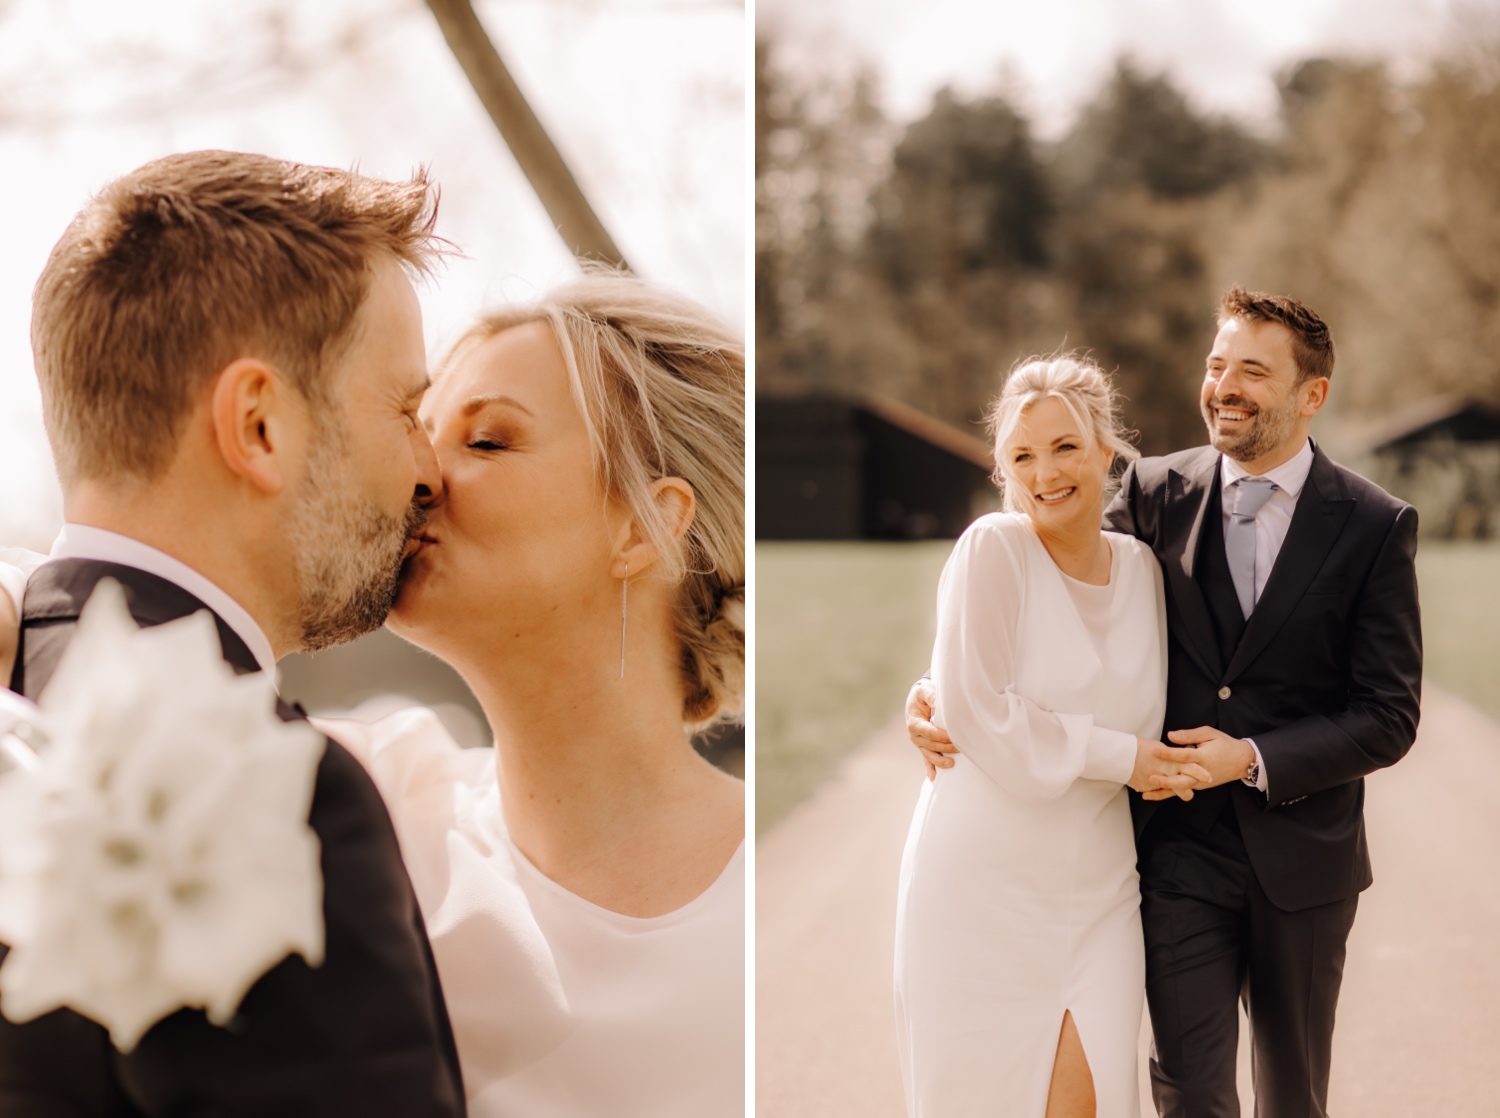 Huwelijksfotograaf Limburg - bruidspaar lacht tijdens fotoshoot in Averbode